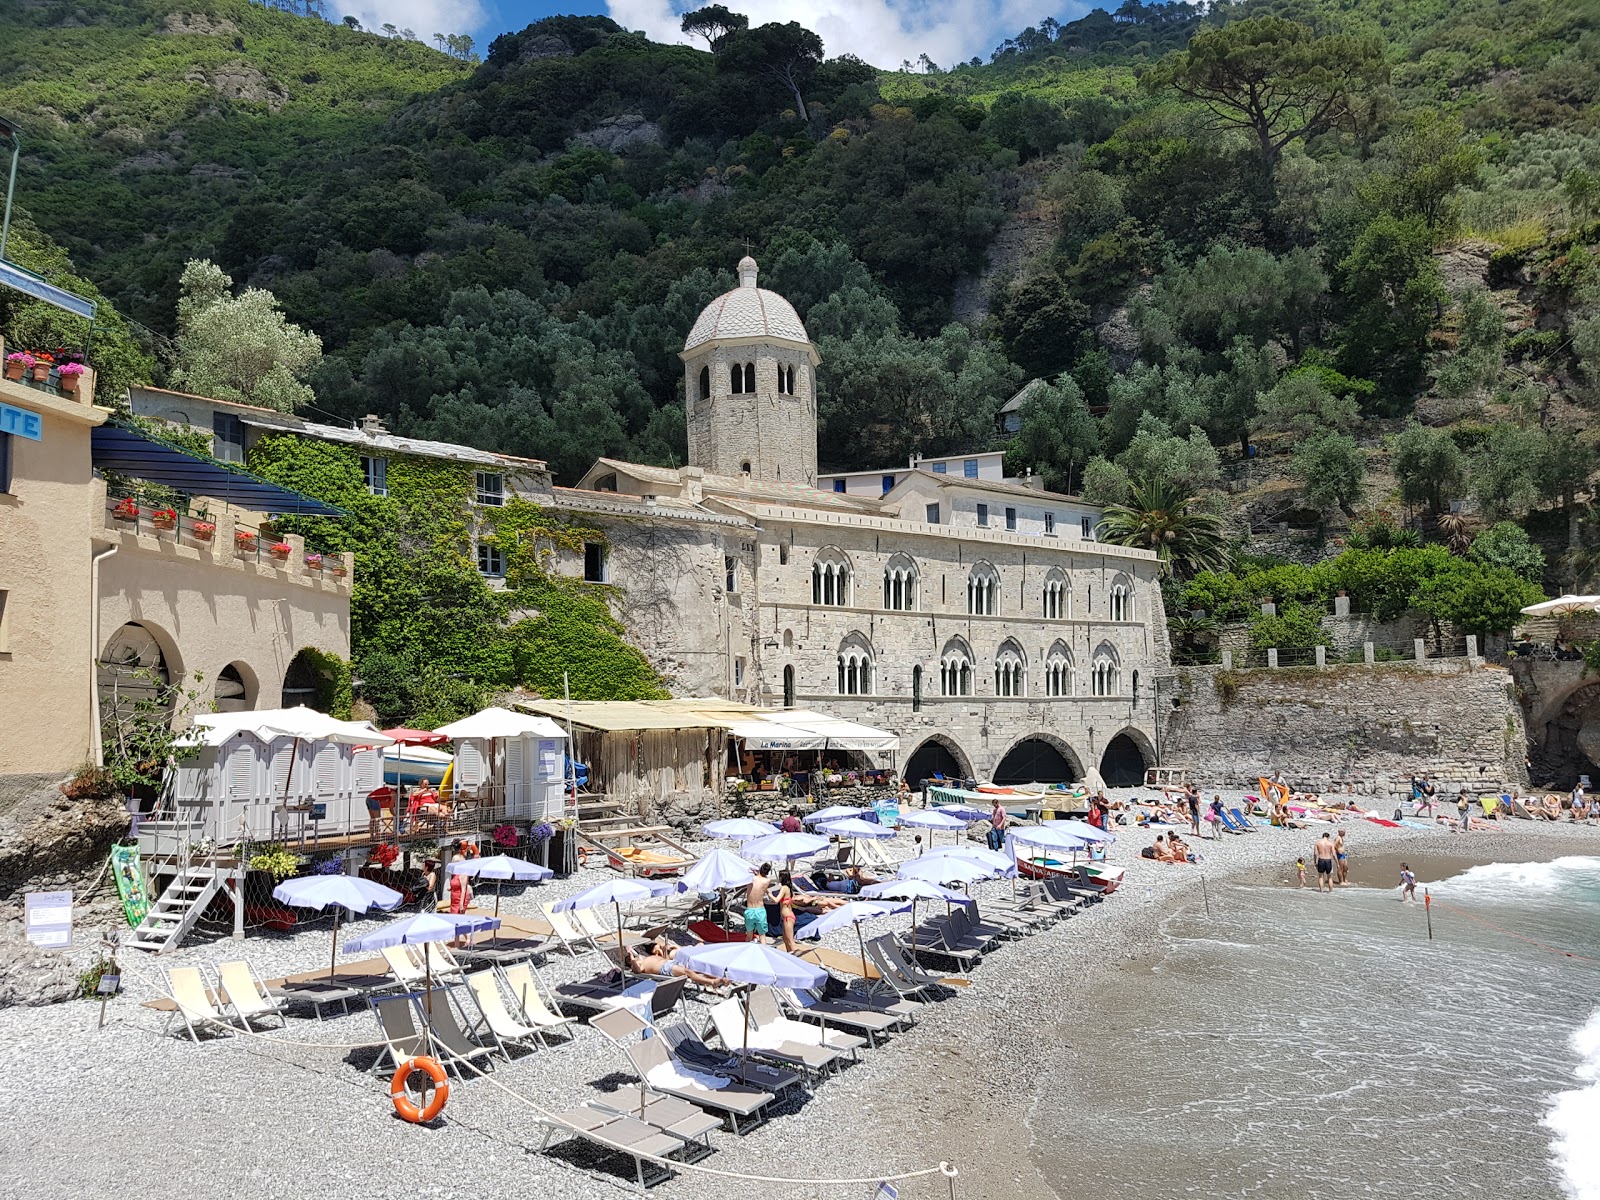 Spiaggia San Fruttuoso'in fotoğrafı çok temiz temizlik seviyesi ile